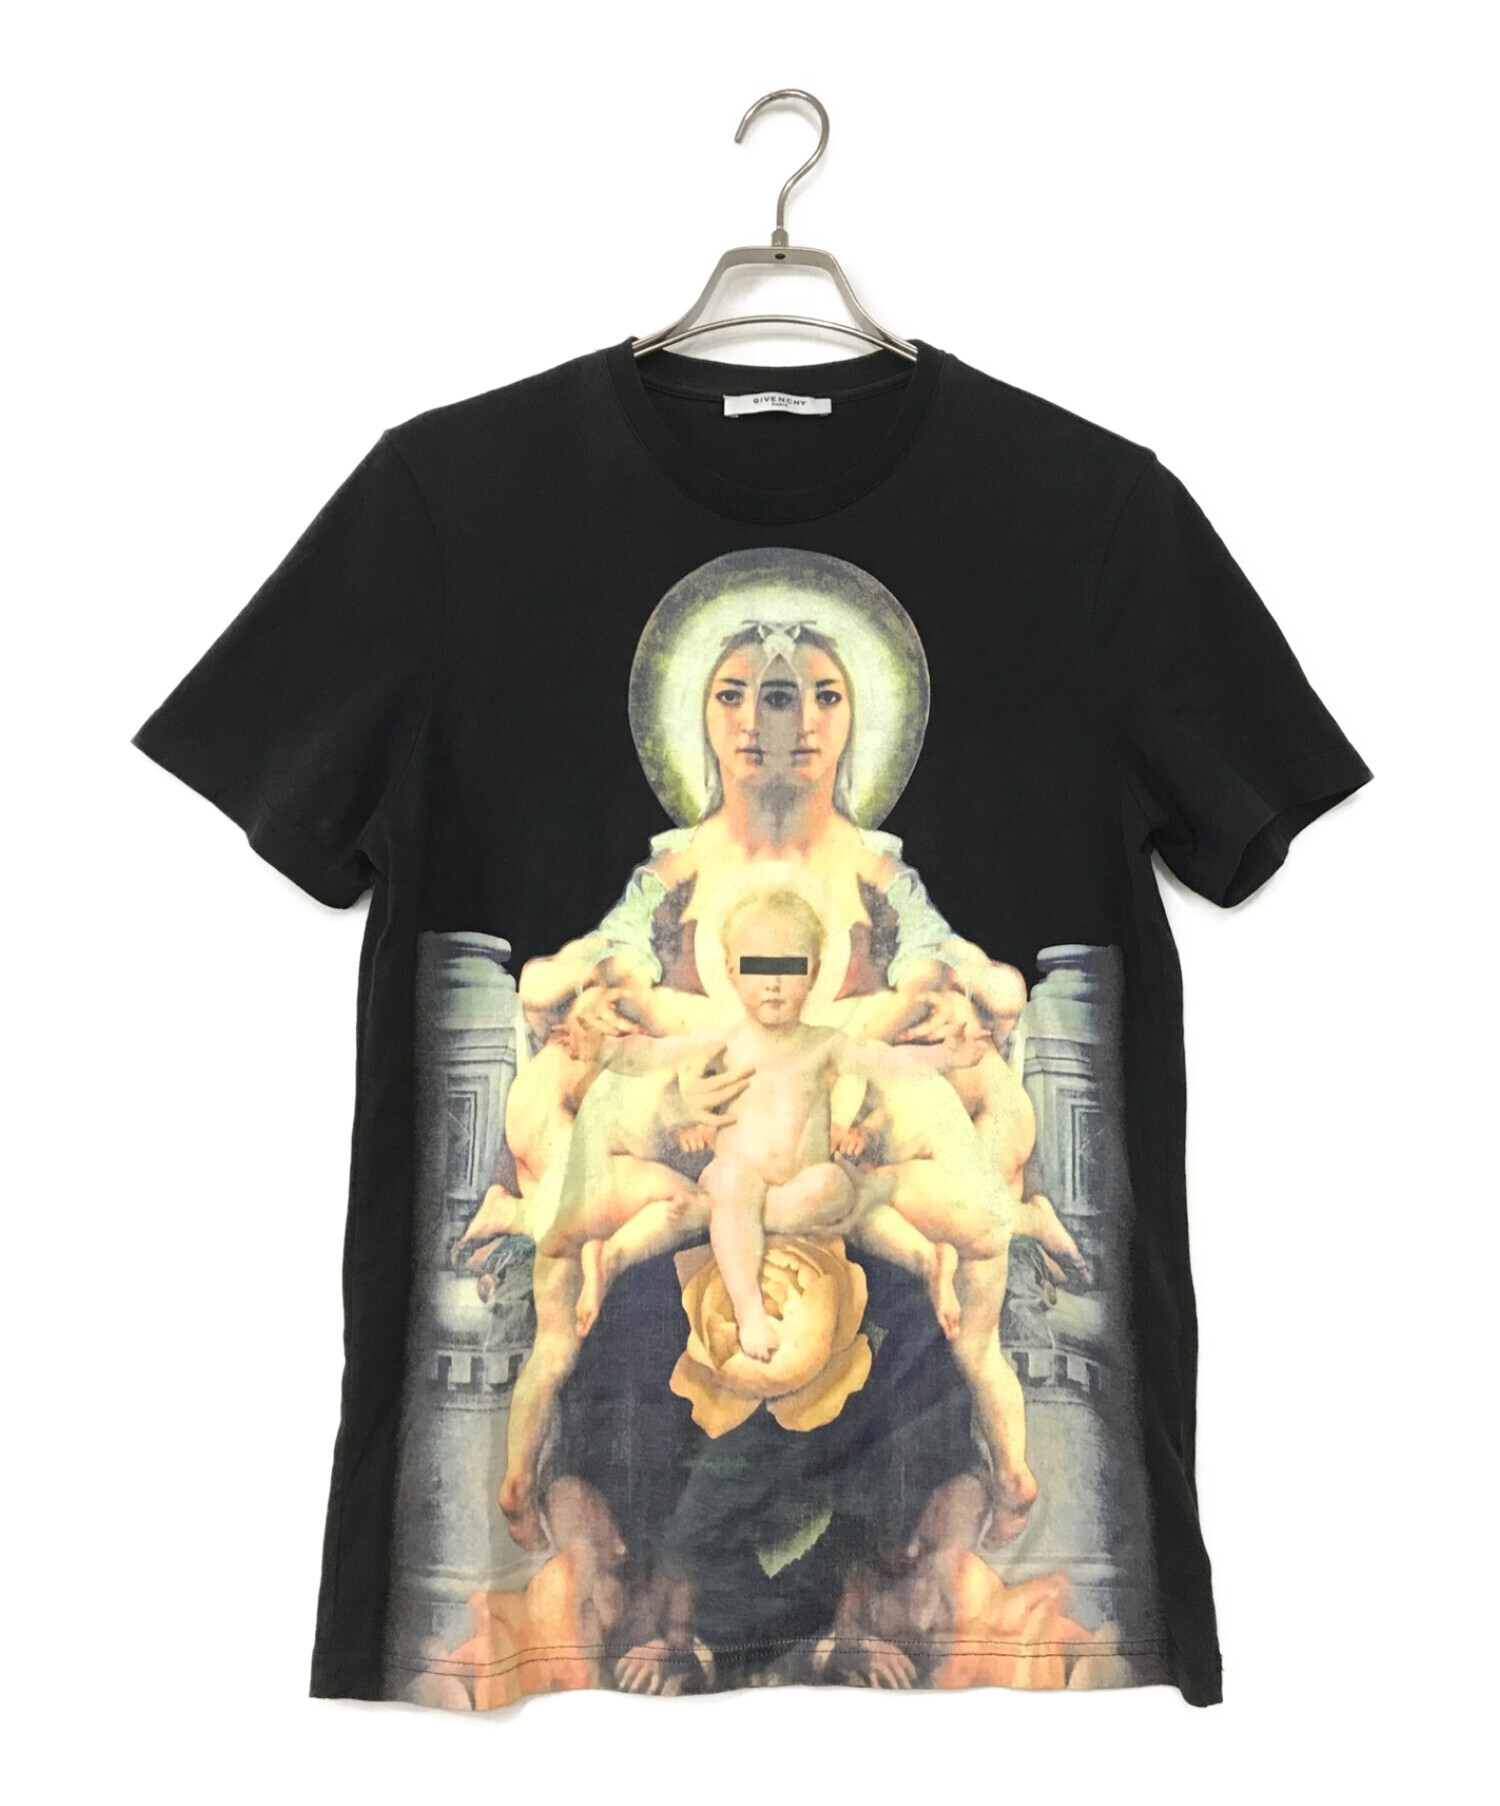 GIVENCHY (ジバンシィ) Saint Printed T Shirt ブラック サイズ:S